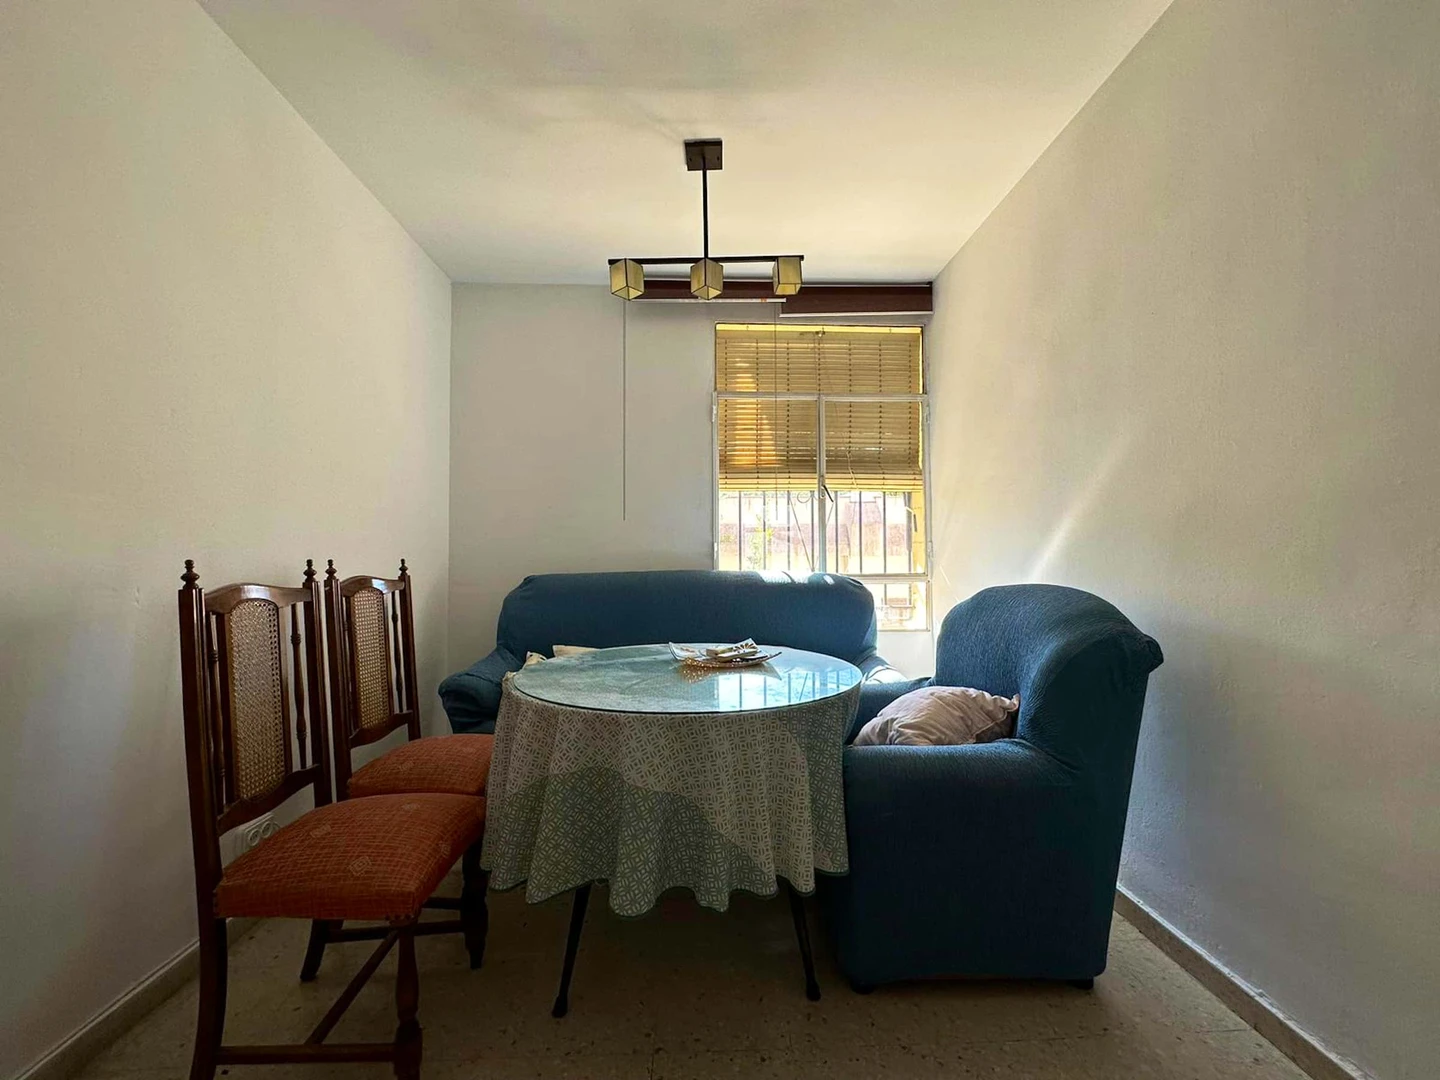 Pokój do wynajęcia z podwójnym łóżkiem w Granada